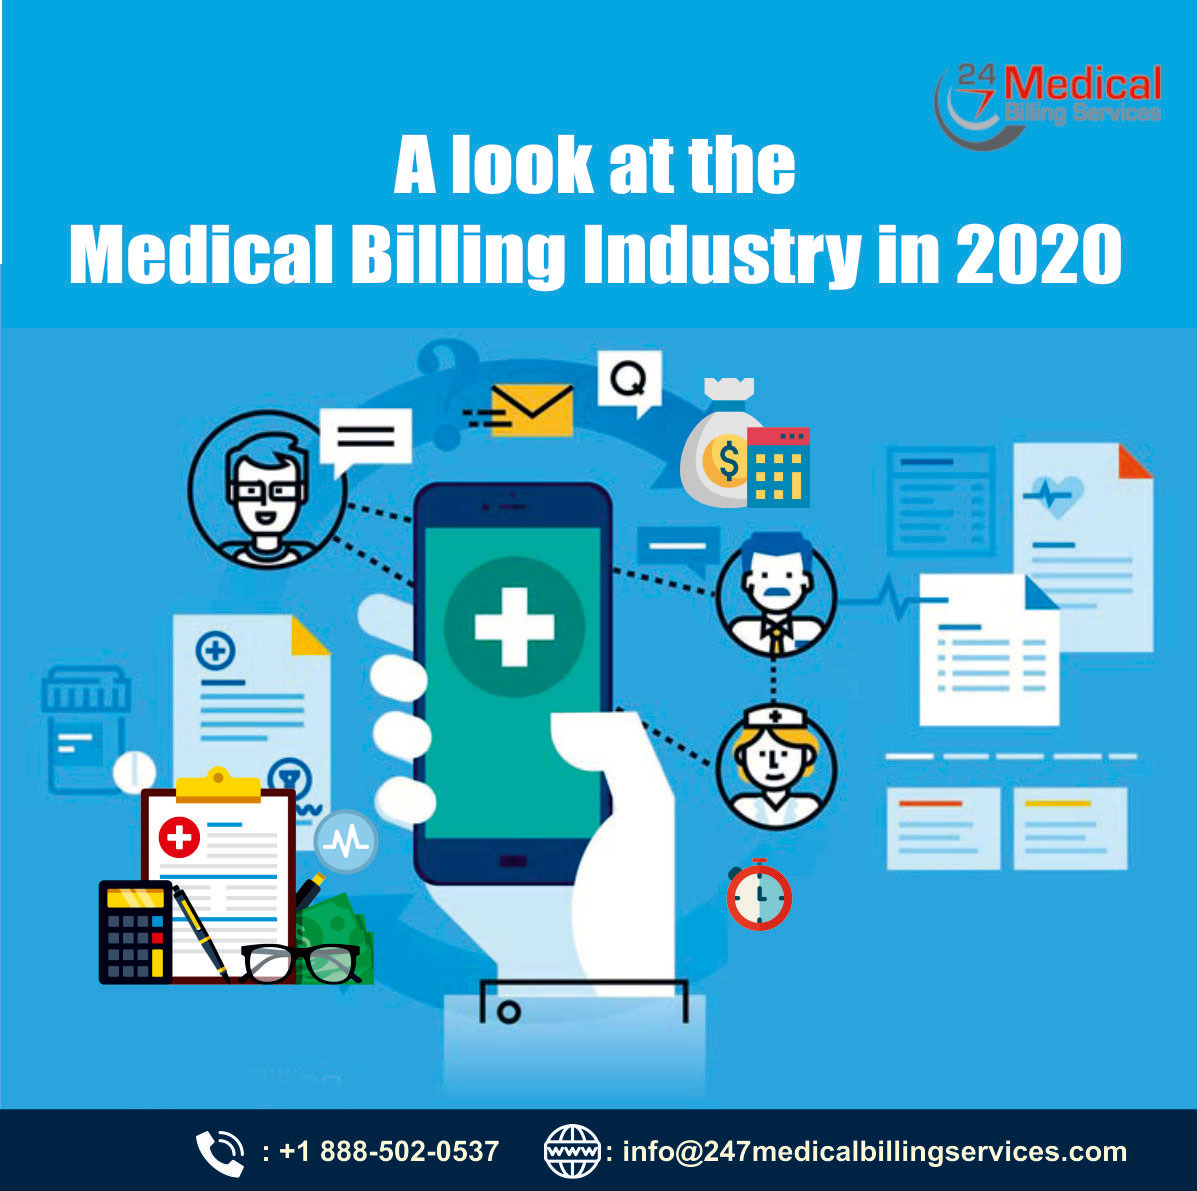 Medical Billing, Medical Billing Services, Medical Billing Services Provider, Medical Billing Company, Medical Billing Services Outsourcing